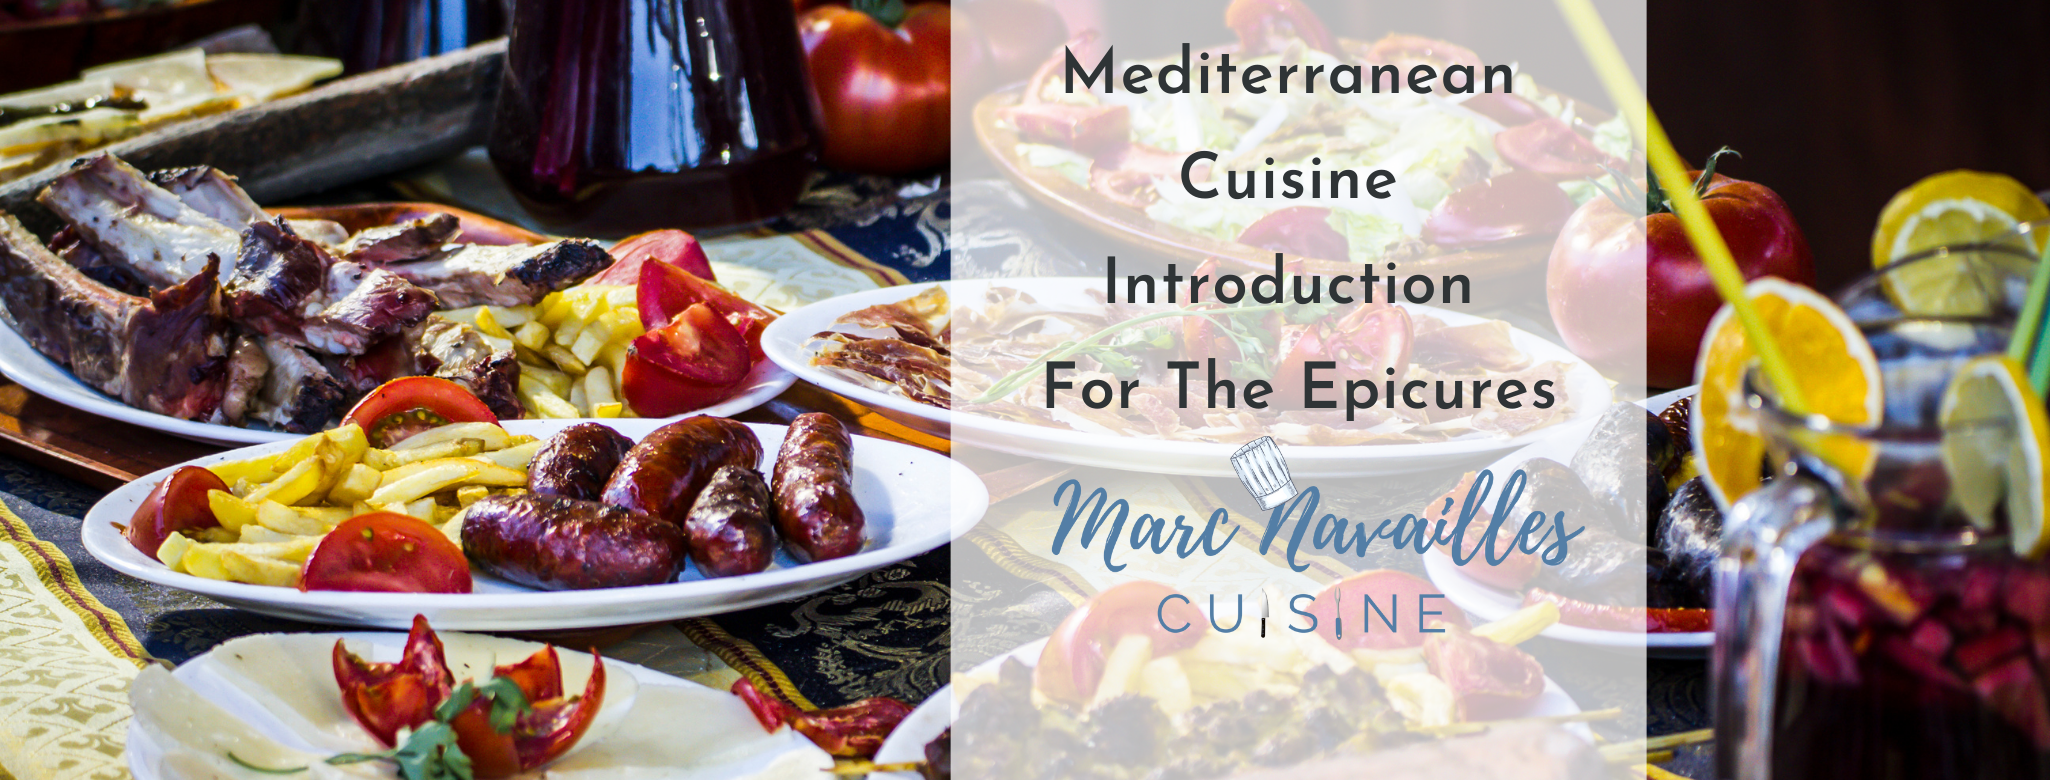 Mediterranean Cuisine Introduction